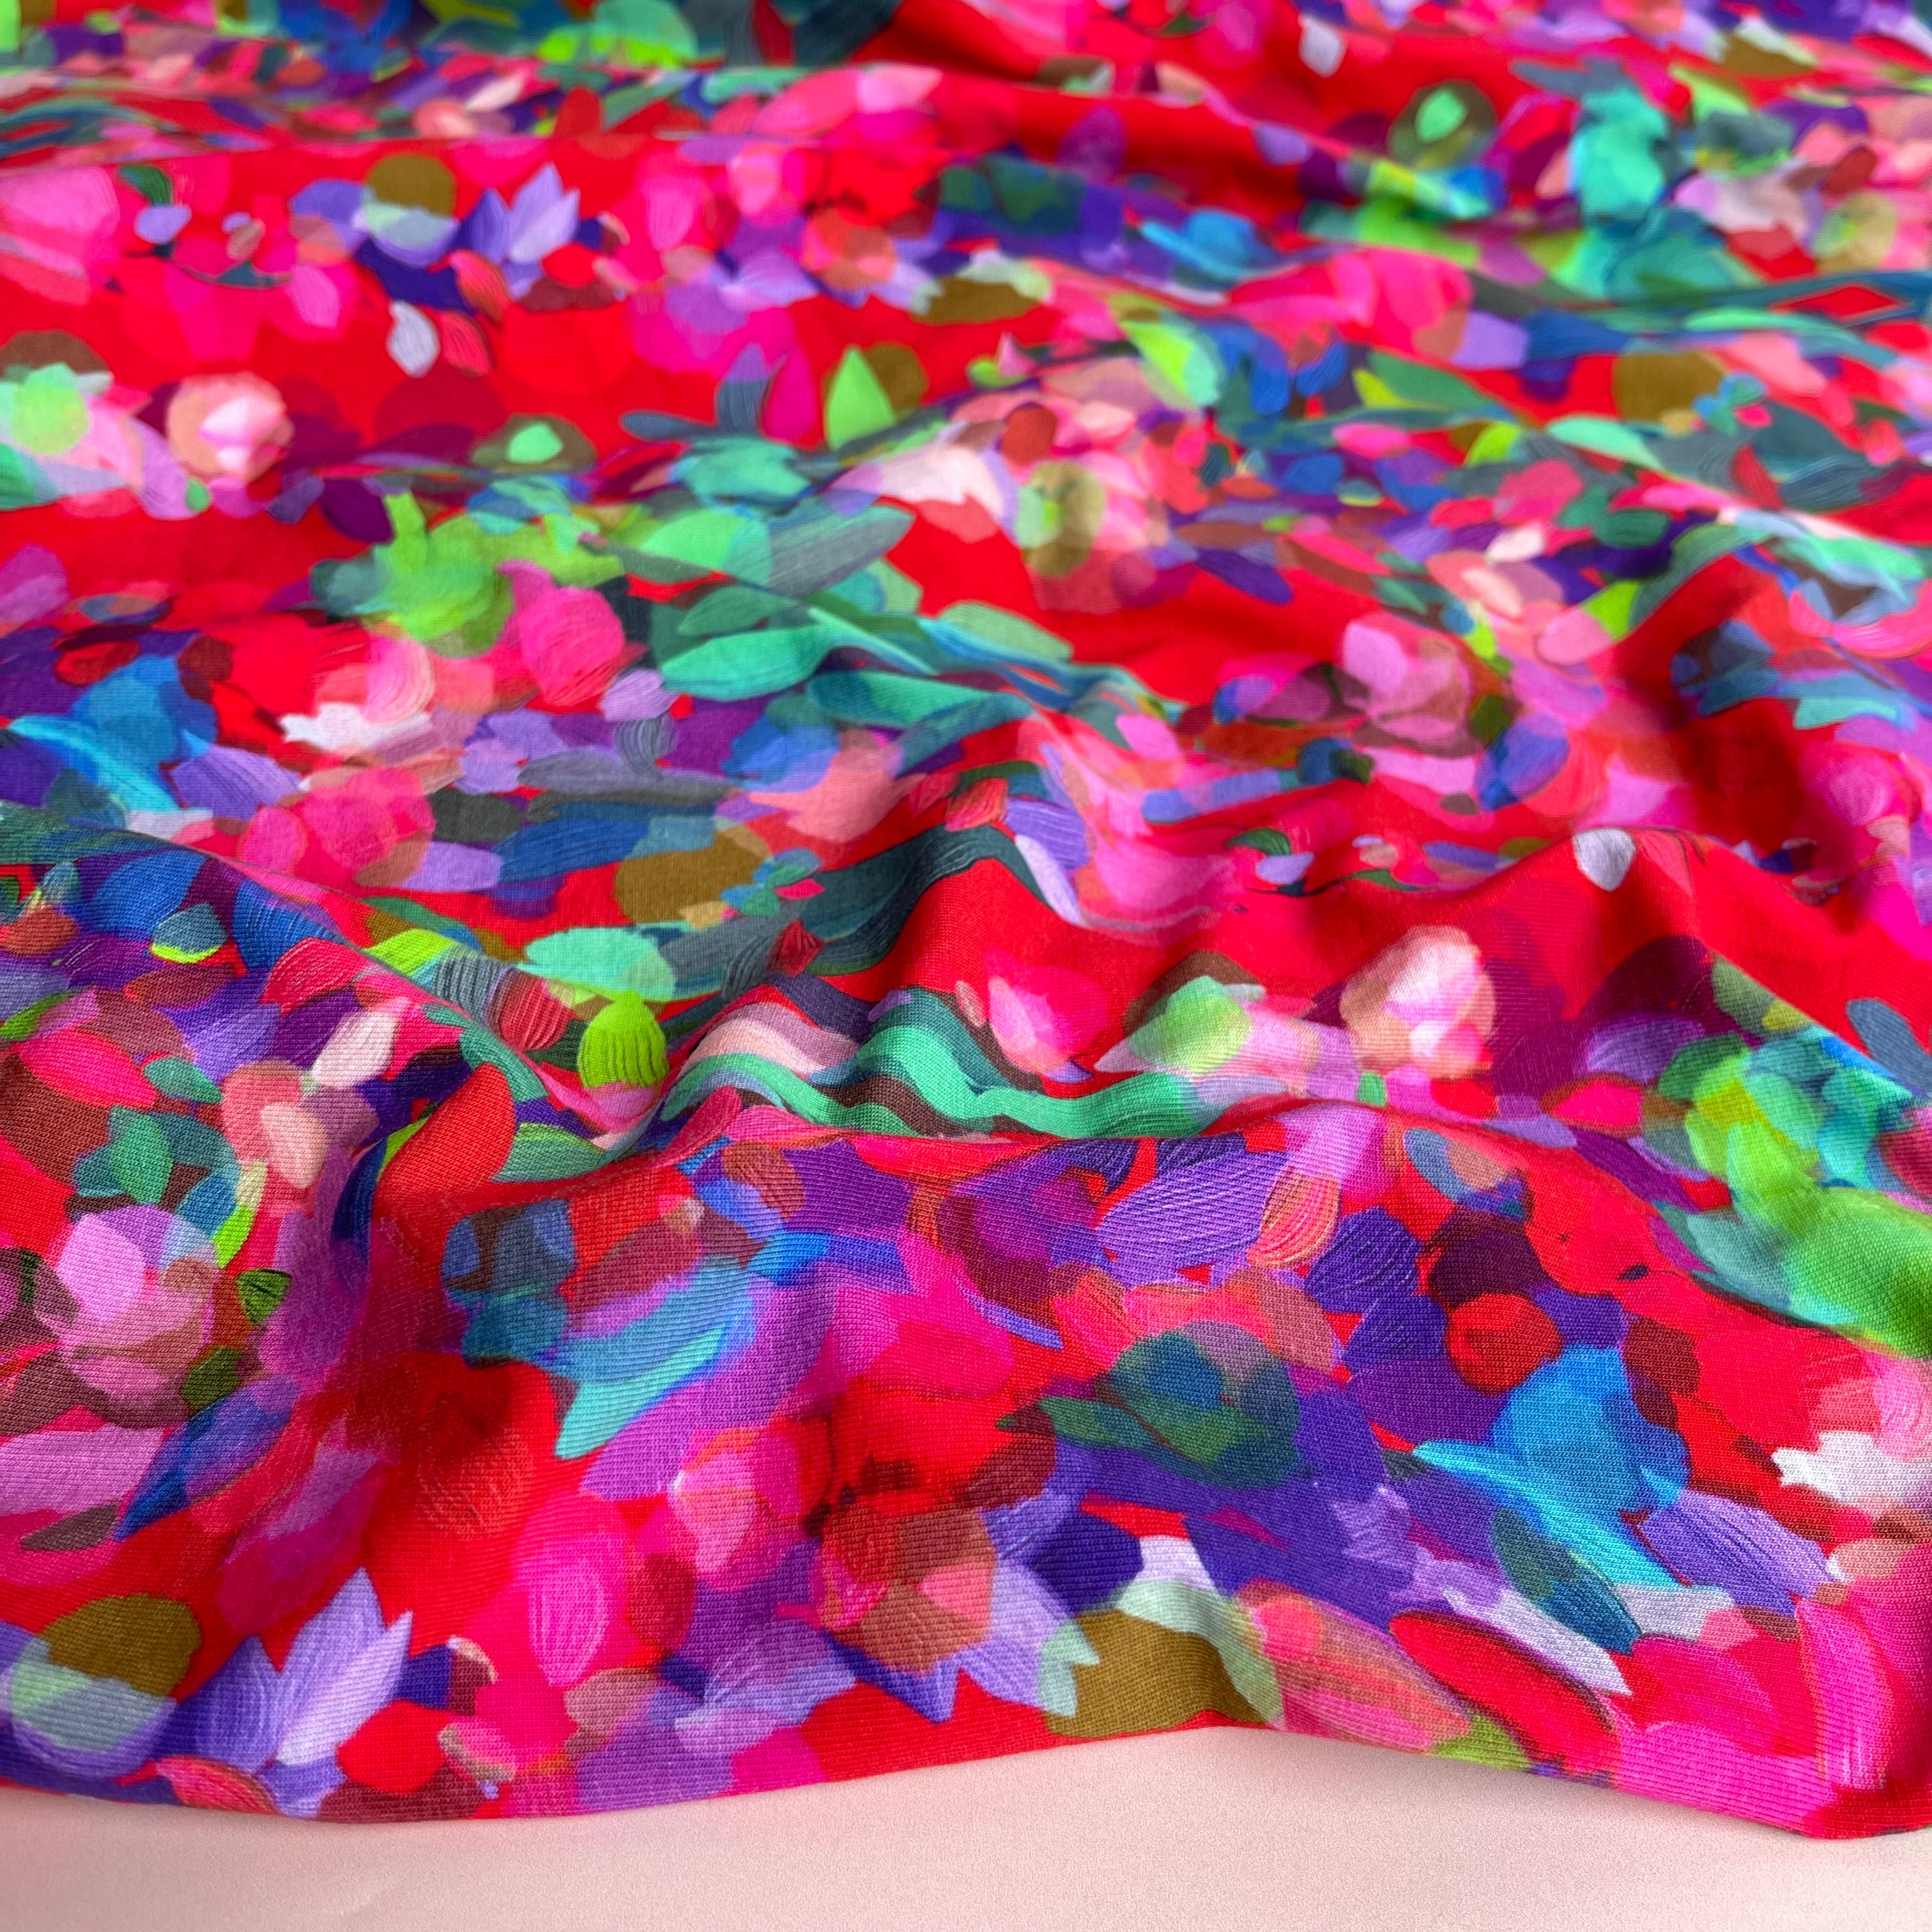 Sewing Kit - Kielo Wrap Dress in Lupine Petals Cotton Jersey